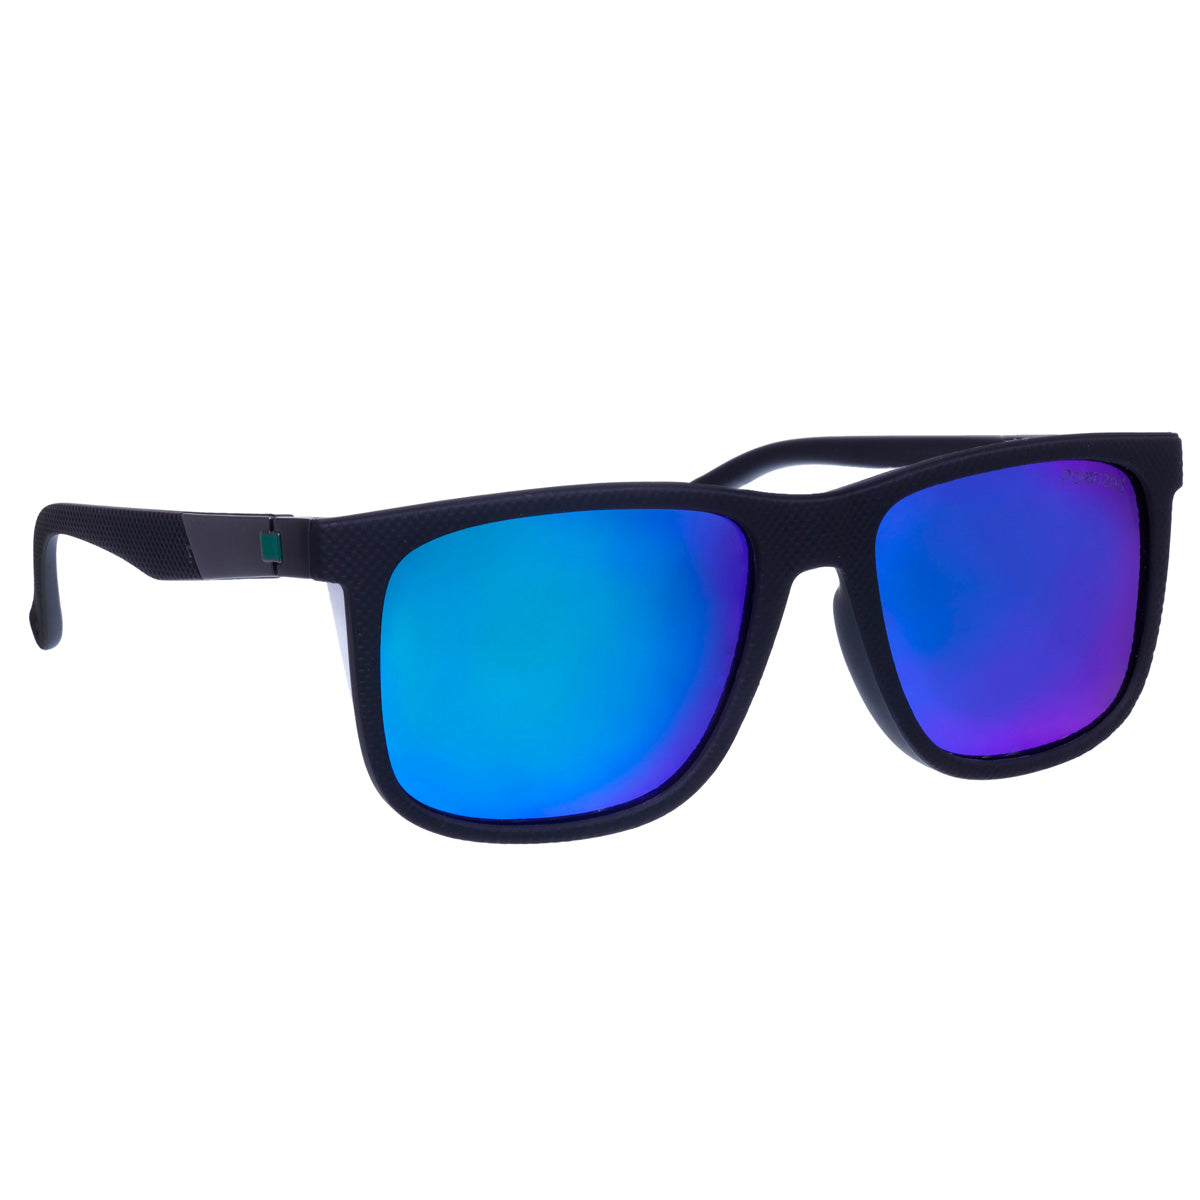 Polarized sunglasses matte finish basic